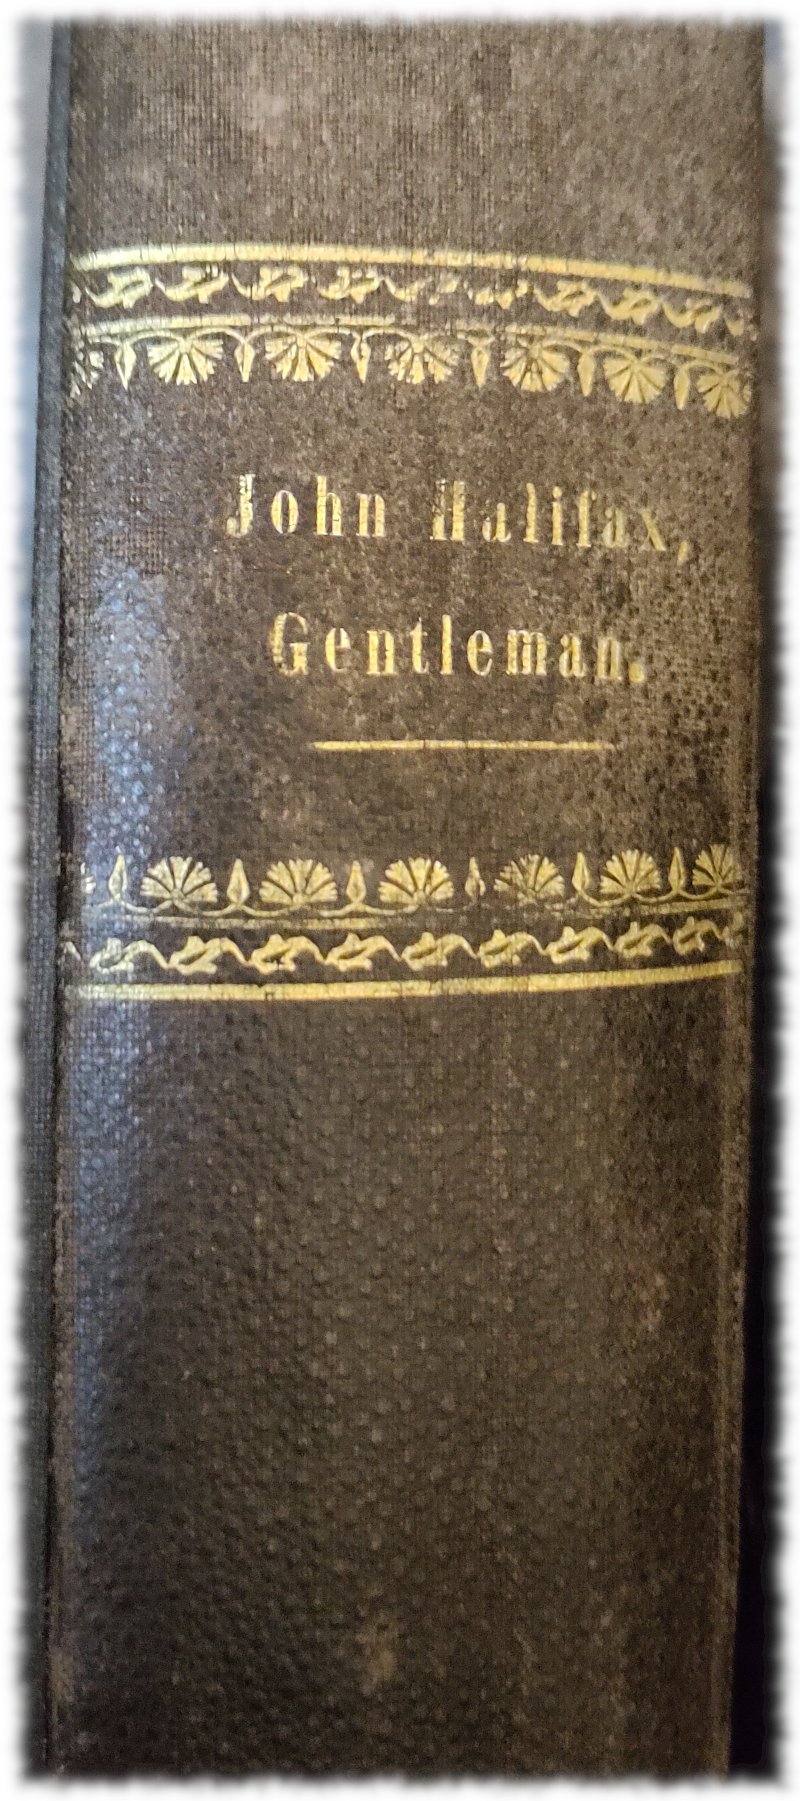 Bcuhrücken von John Halifax, Gentleman, Goldprägung auf sowas wie Leder